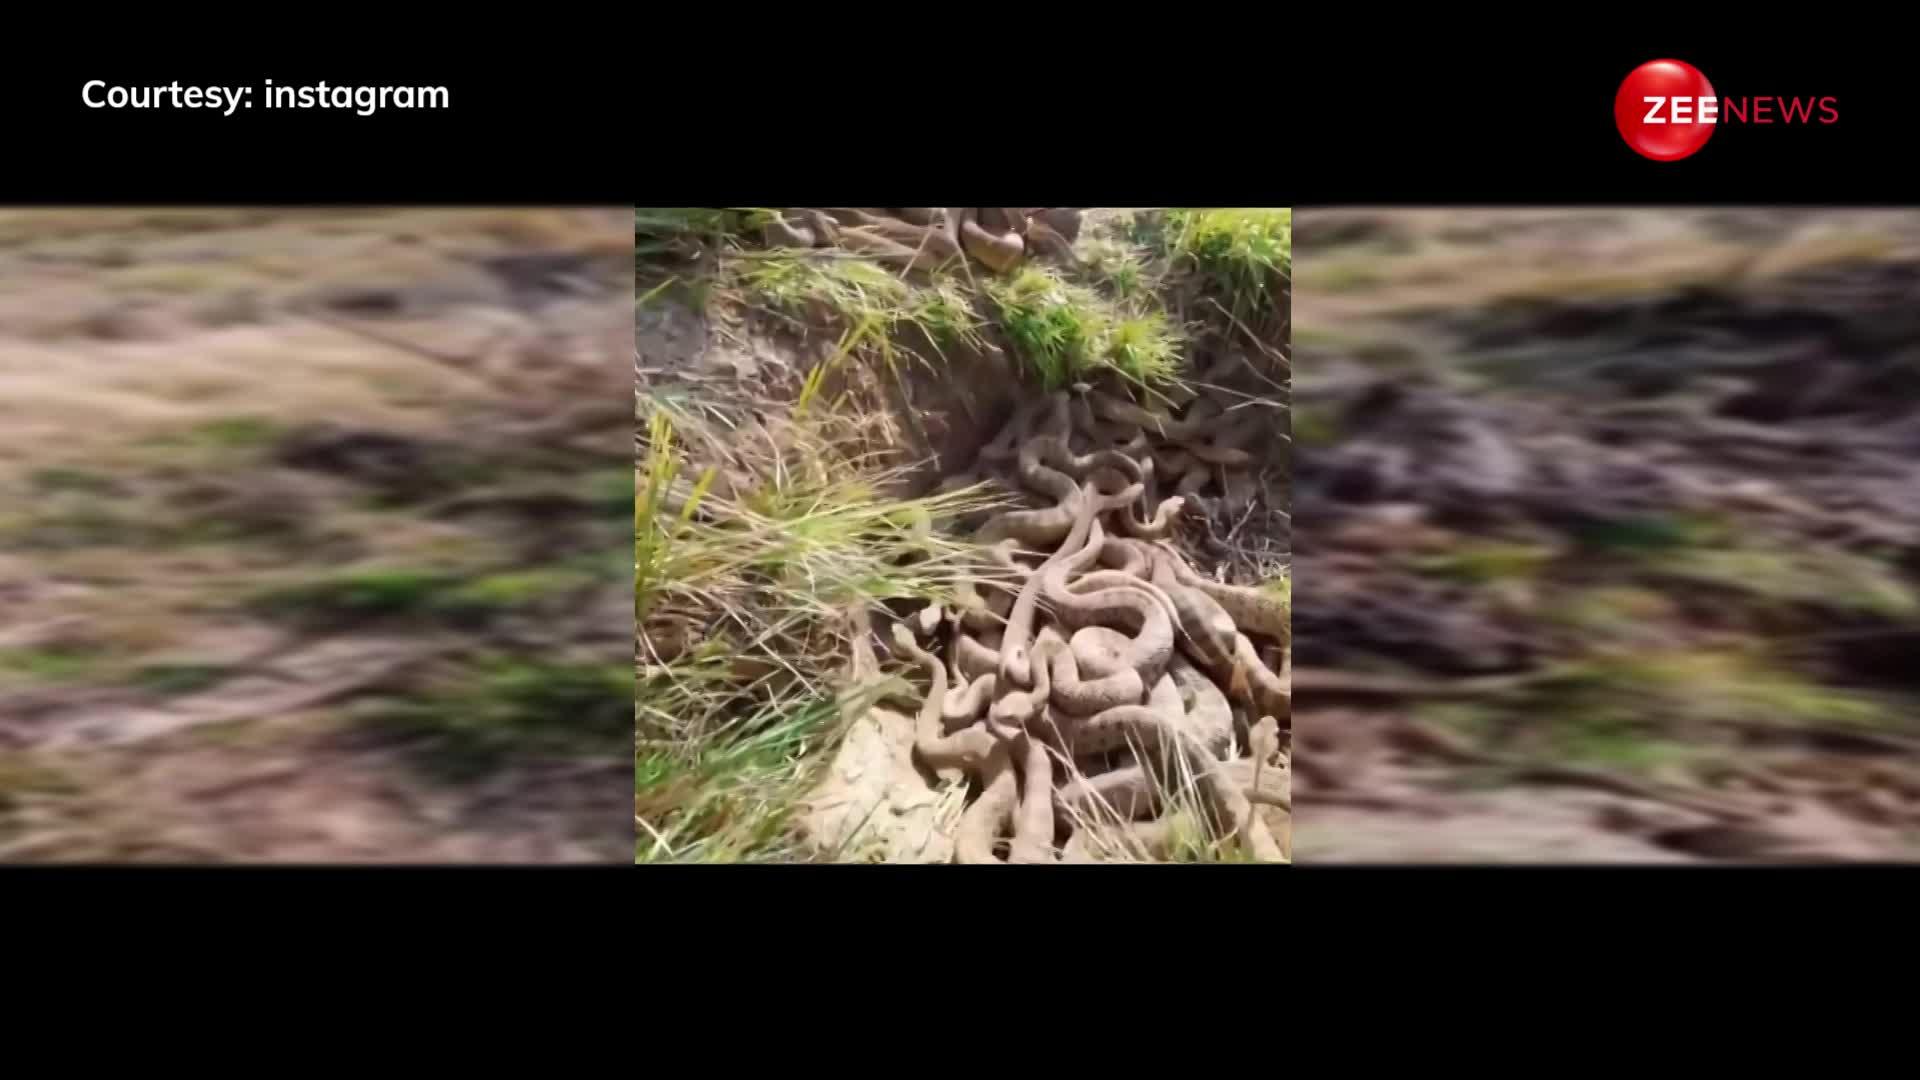 यूट्यूब पर वायरल हुआ नागलोक का वीडियो, जमीन पर पड़े दिखे लाखों जहरीले सांप